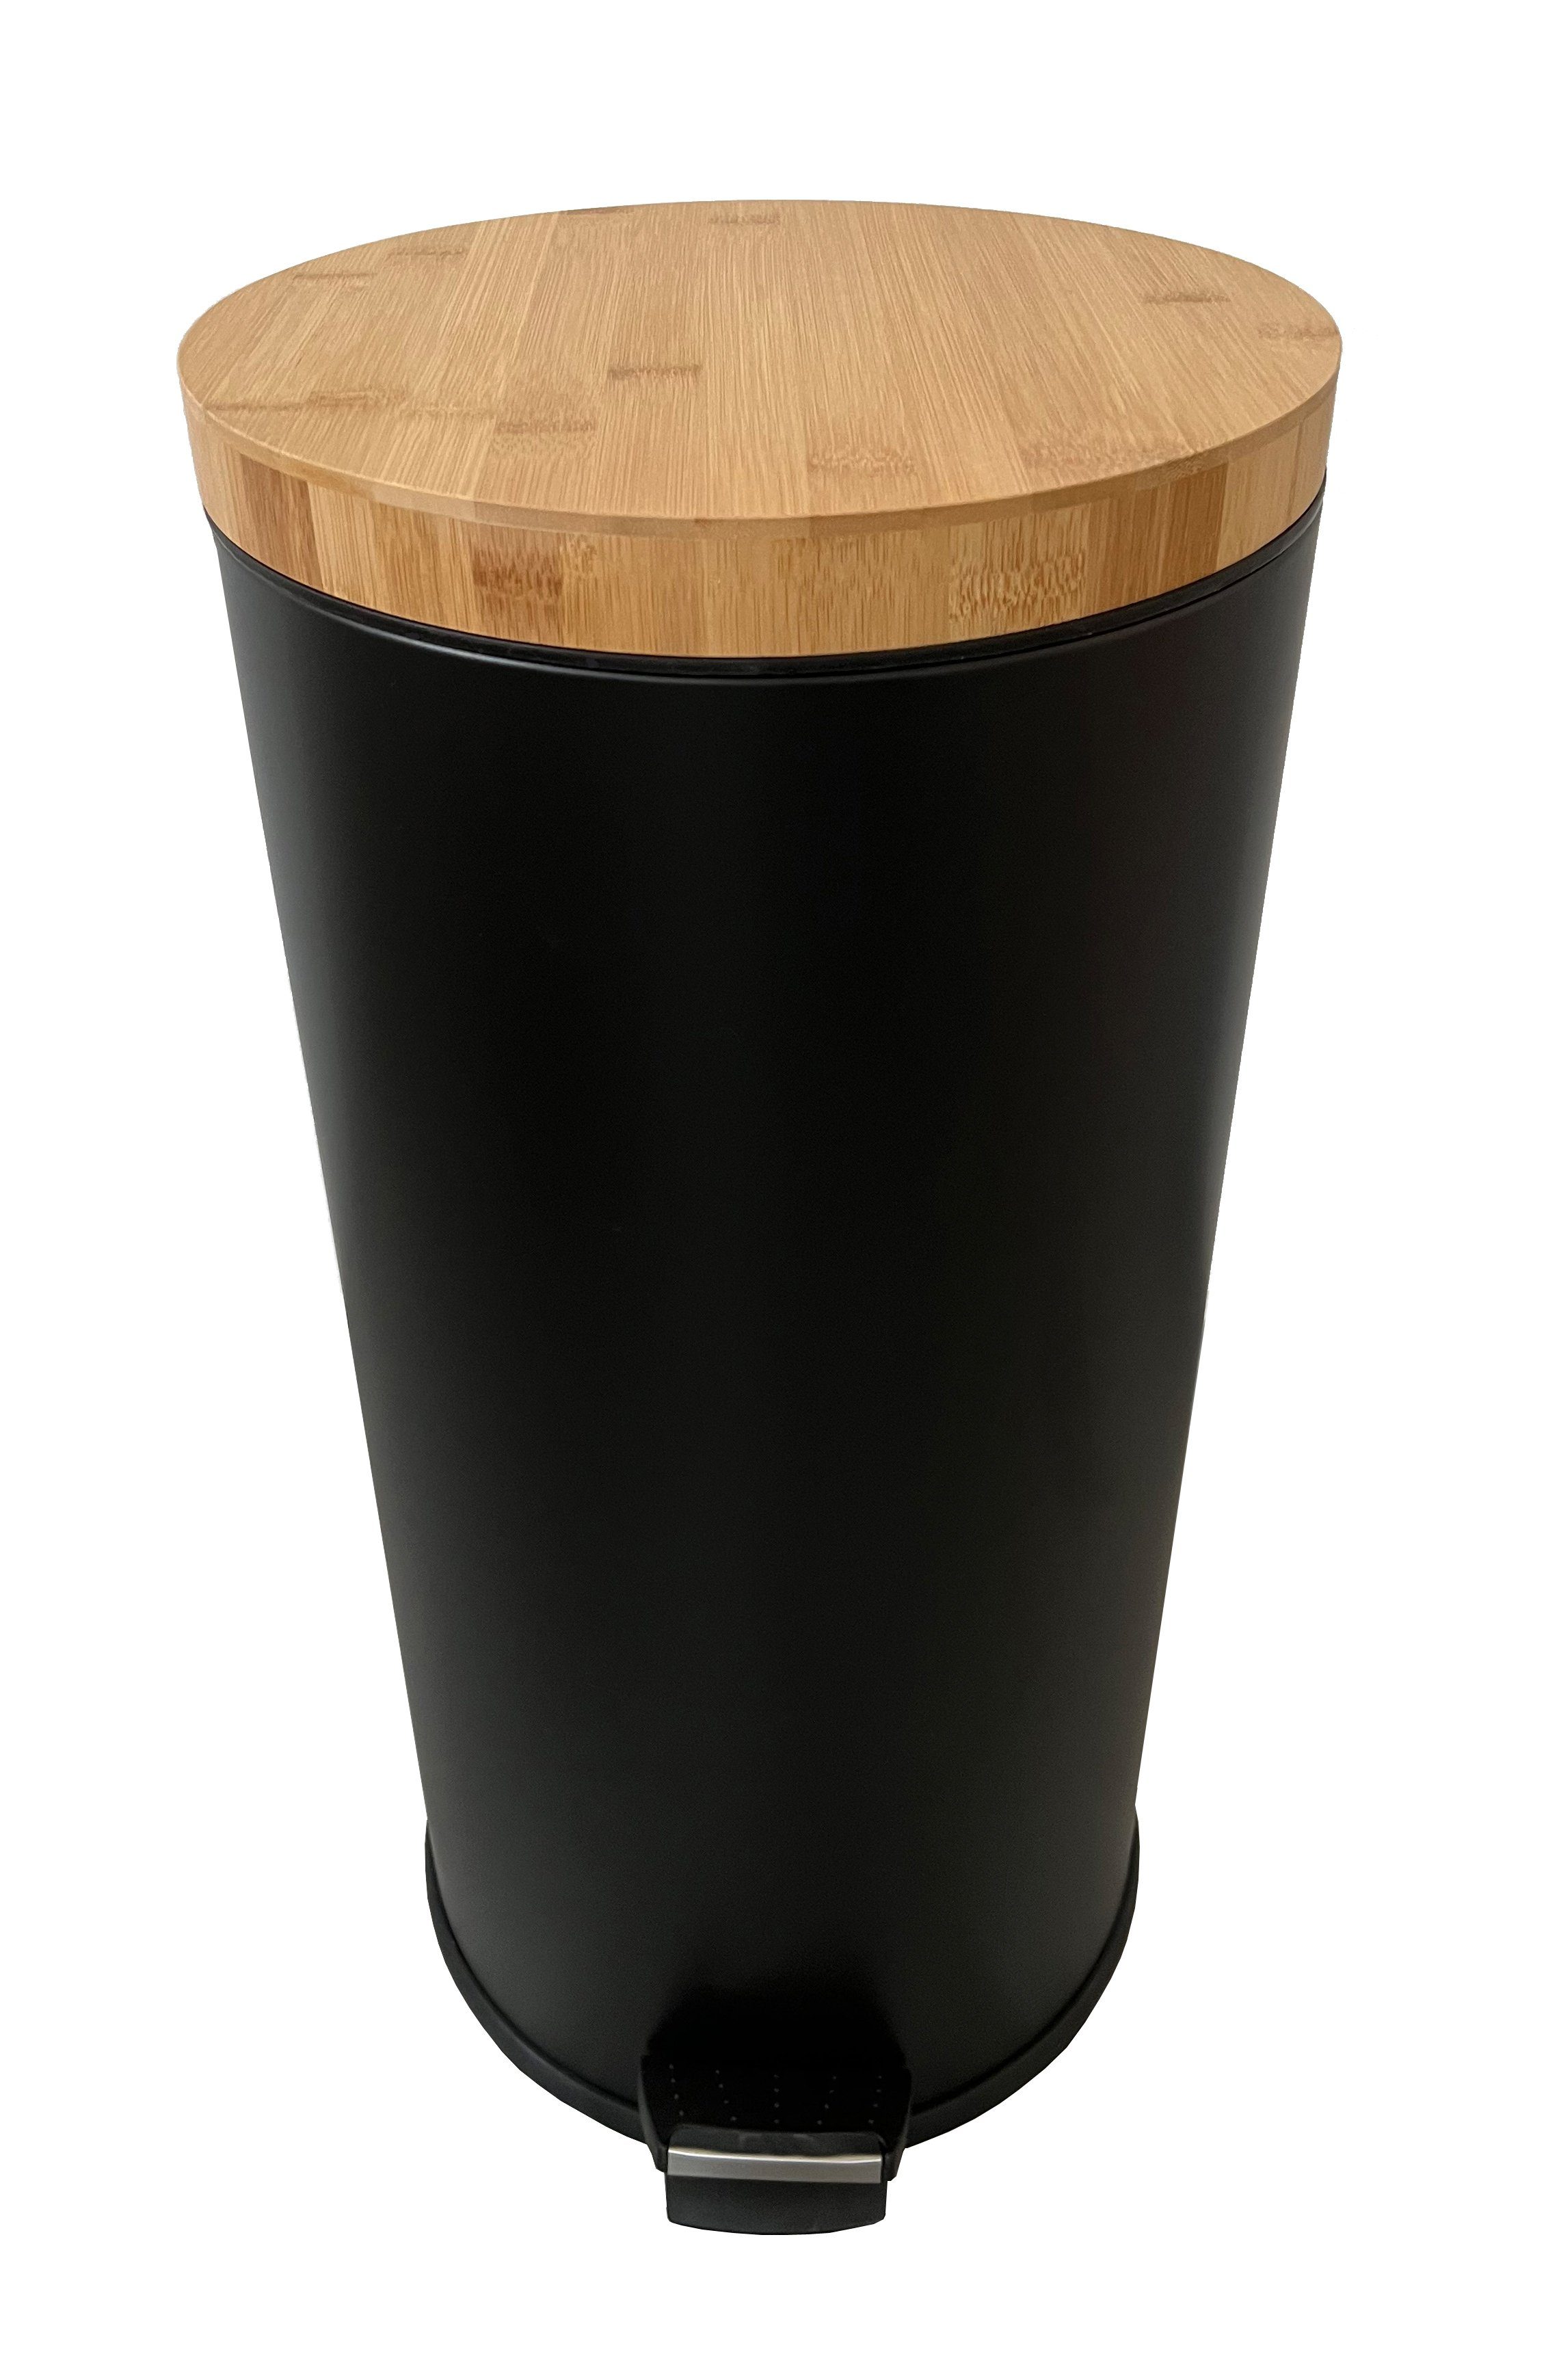 ADOB Mülleimer Abfalleimer Tretabfalleimer Schwarz-Matt (20 oder 30 Liter), Bambus Deckel, herausnehmbarer Inneneimer, keine Fingerabdrücke